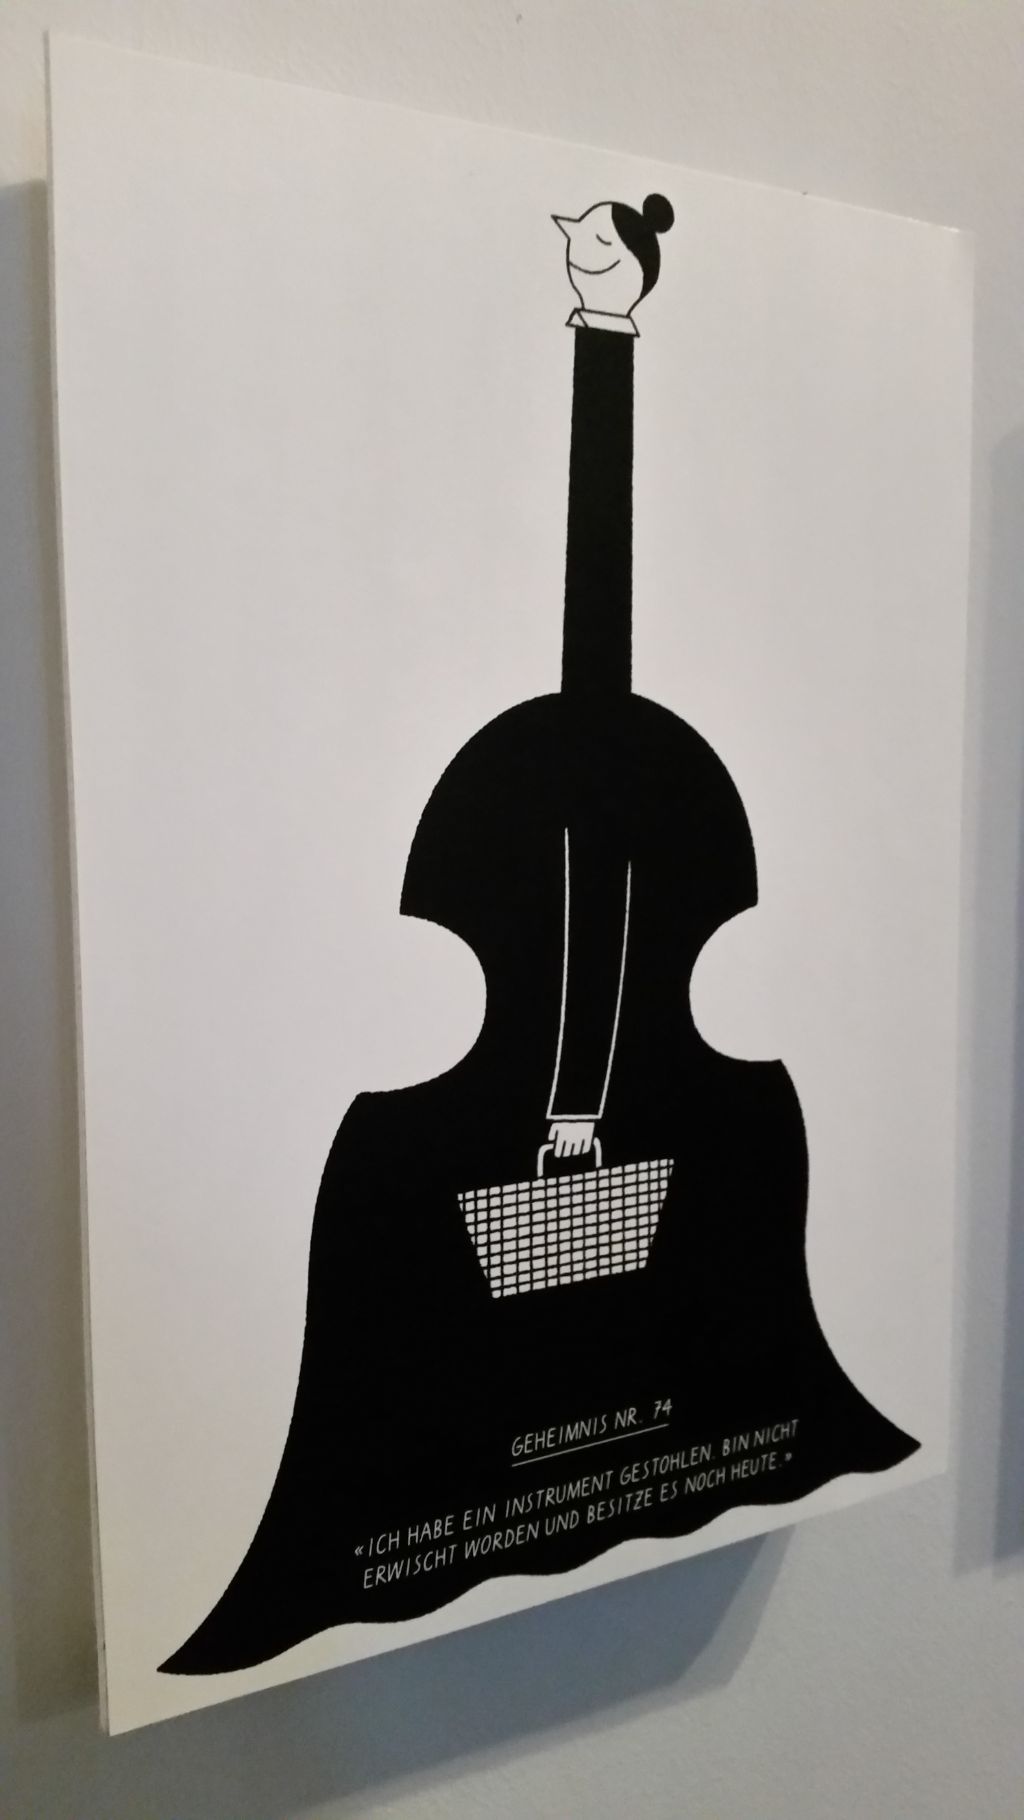 Das Bild zeigt die neuste Illustration von Till Lauer. Zu sehen ist eine Figur in Schwarz, eine Frau, die wie ein Kontrabass geformt ist.